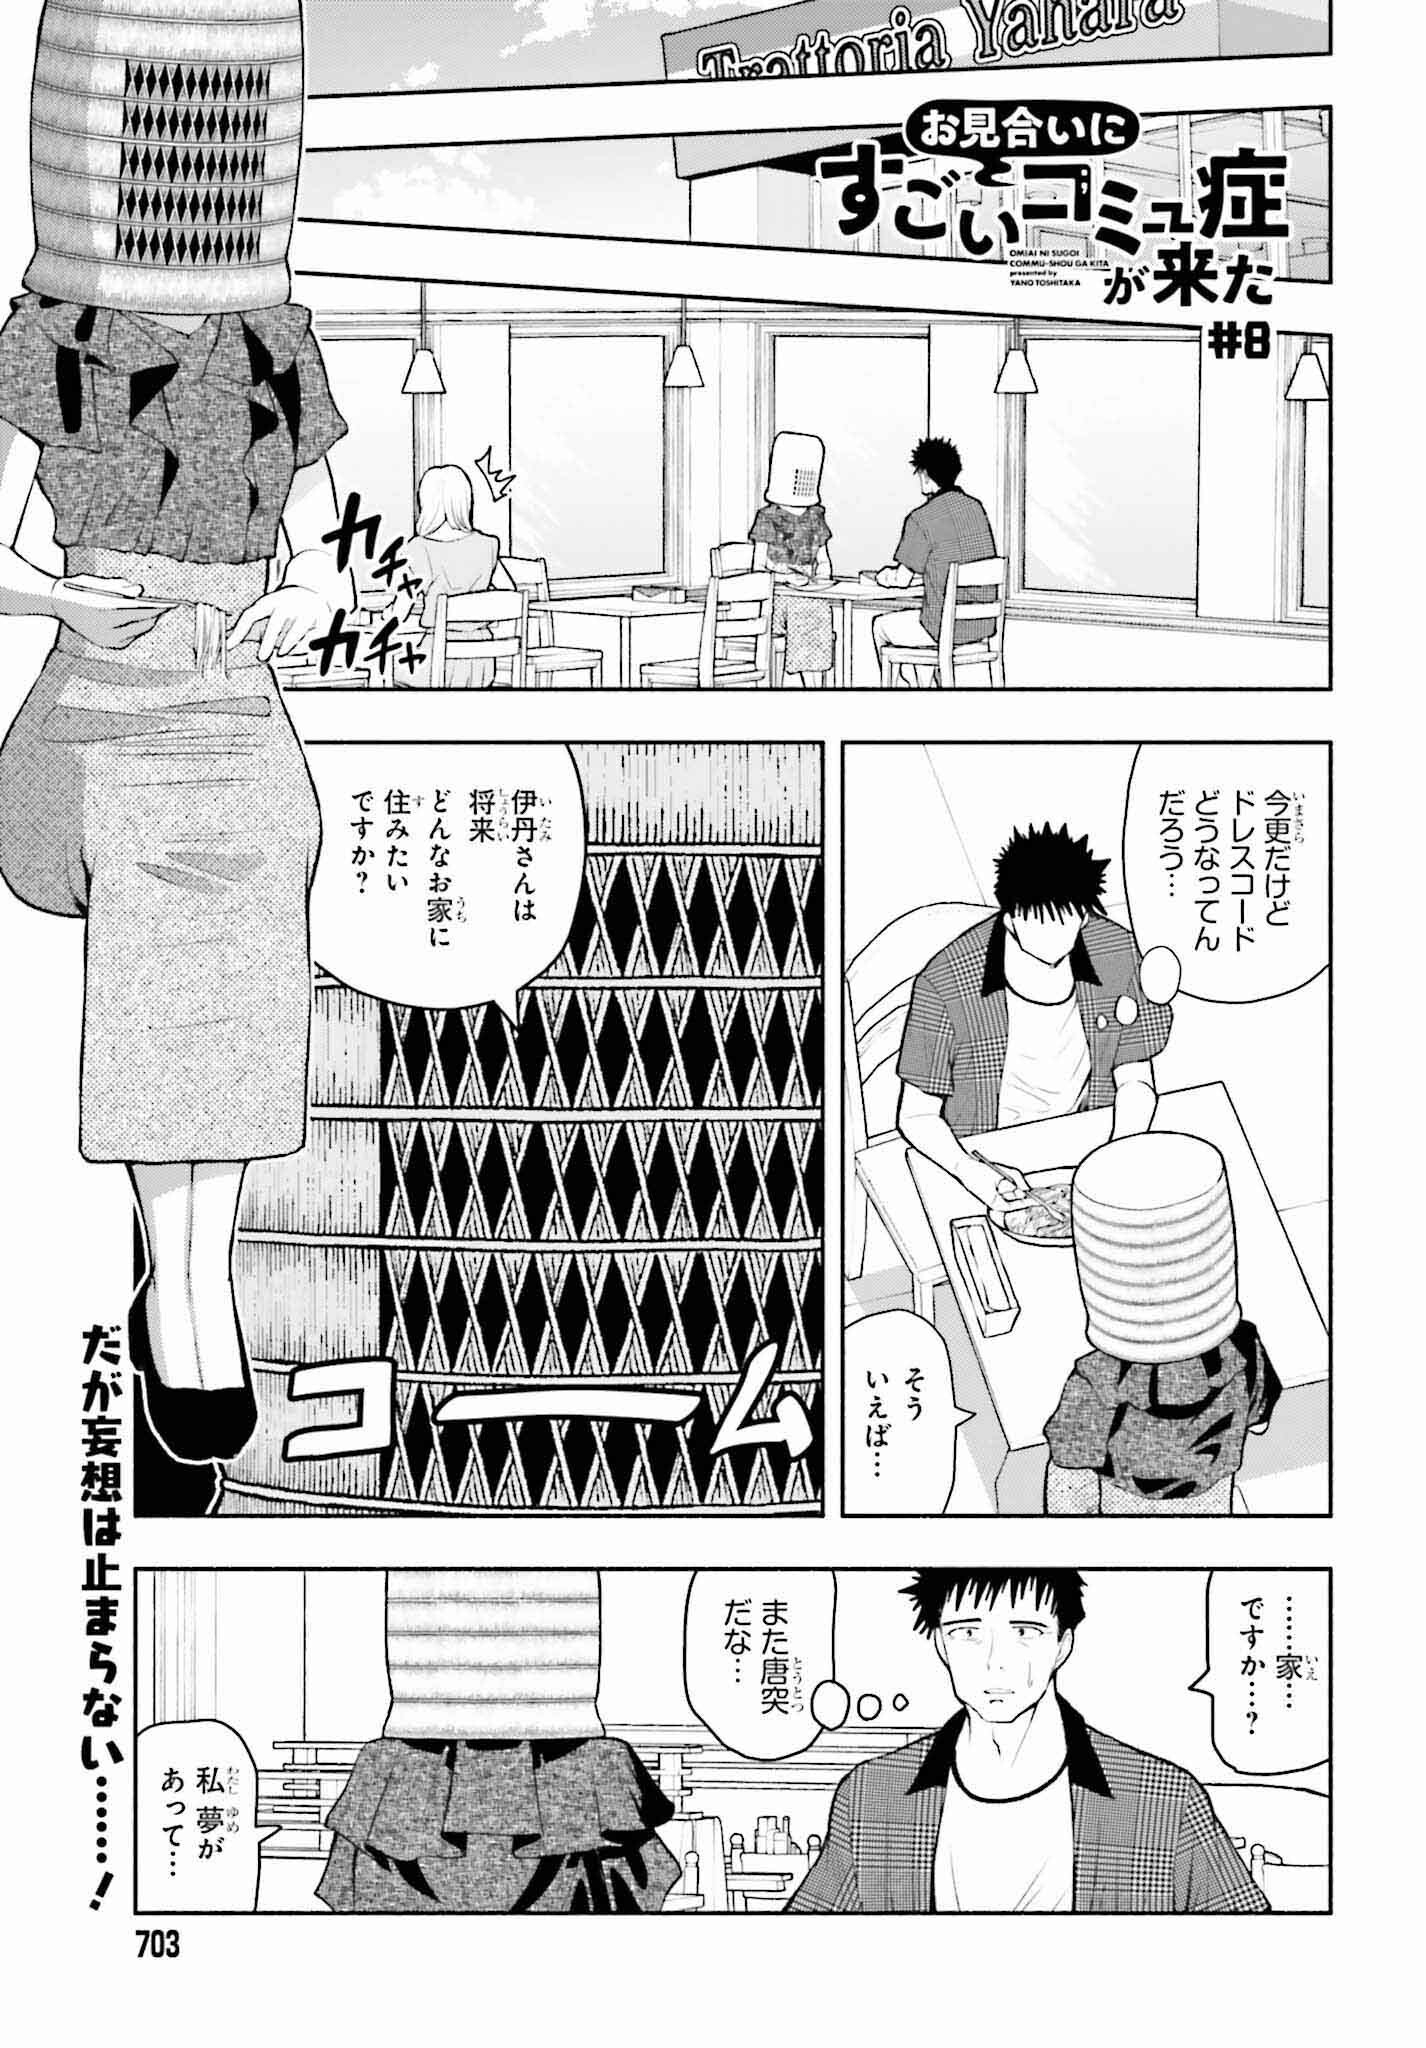 Omiai ni Sugoi Komyushou ga Kita - Chapter 8 - Page 1